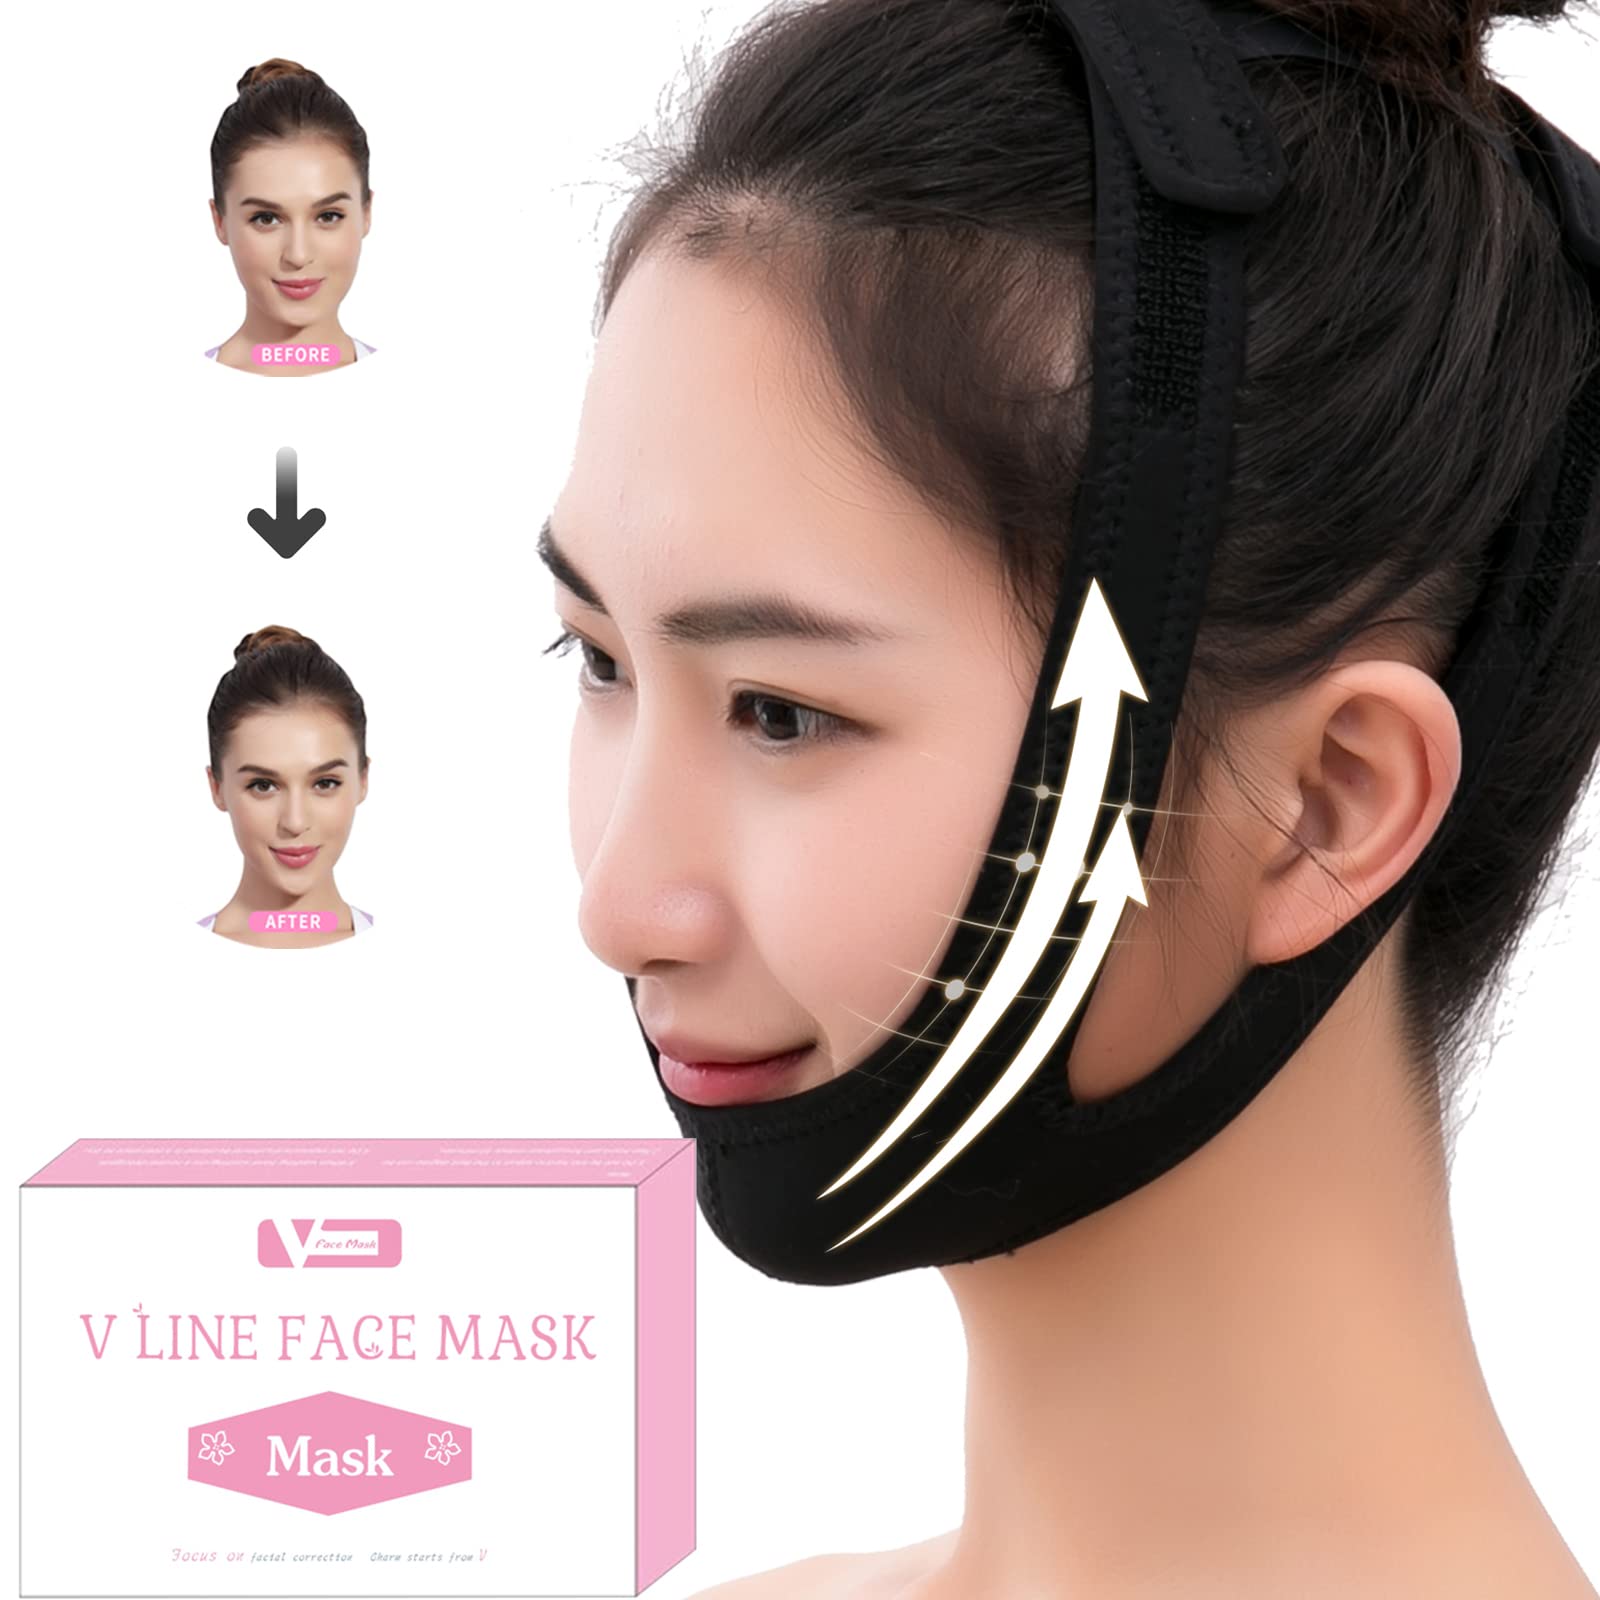 V Line Mask Facial Slimming Strap Face Mask Slimming Bandage Face